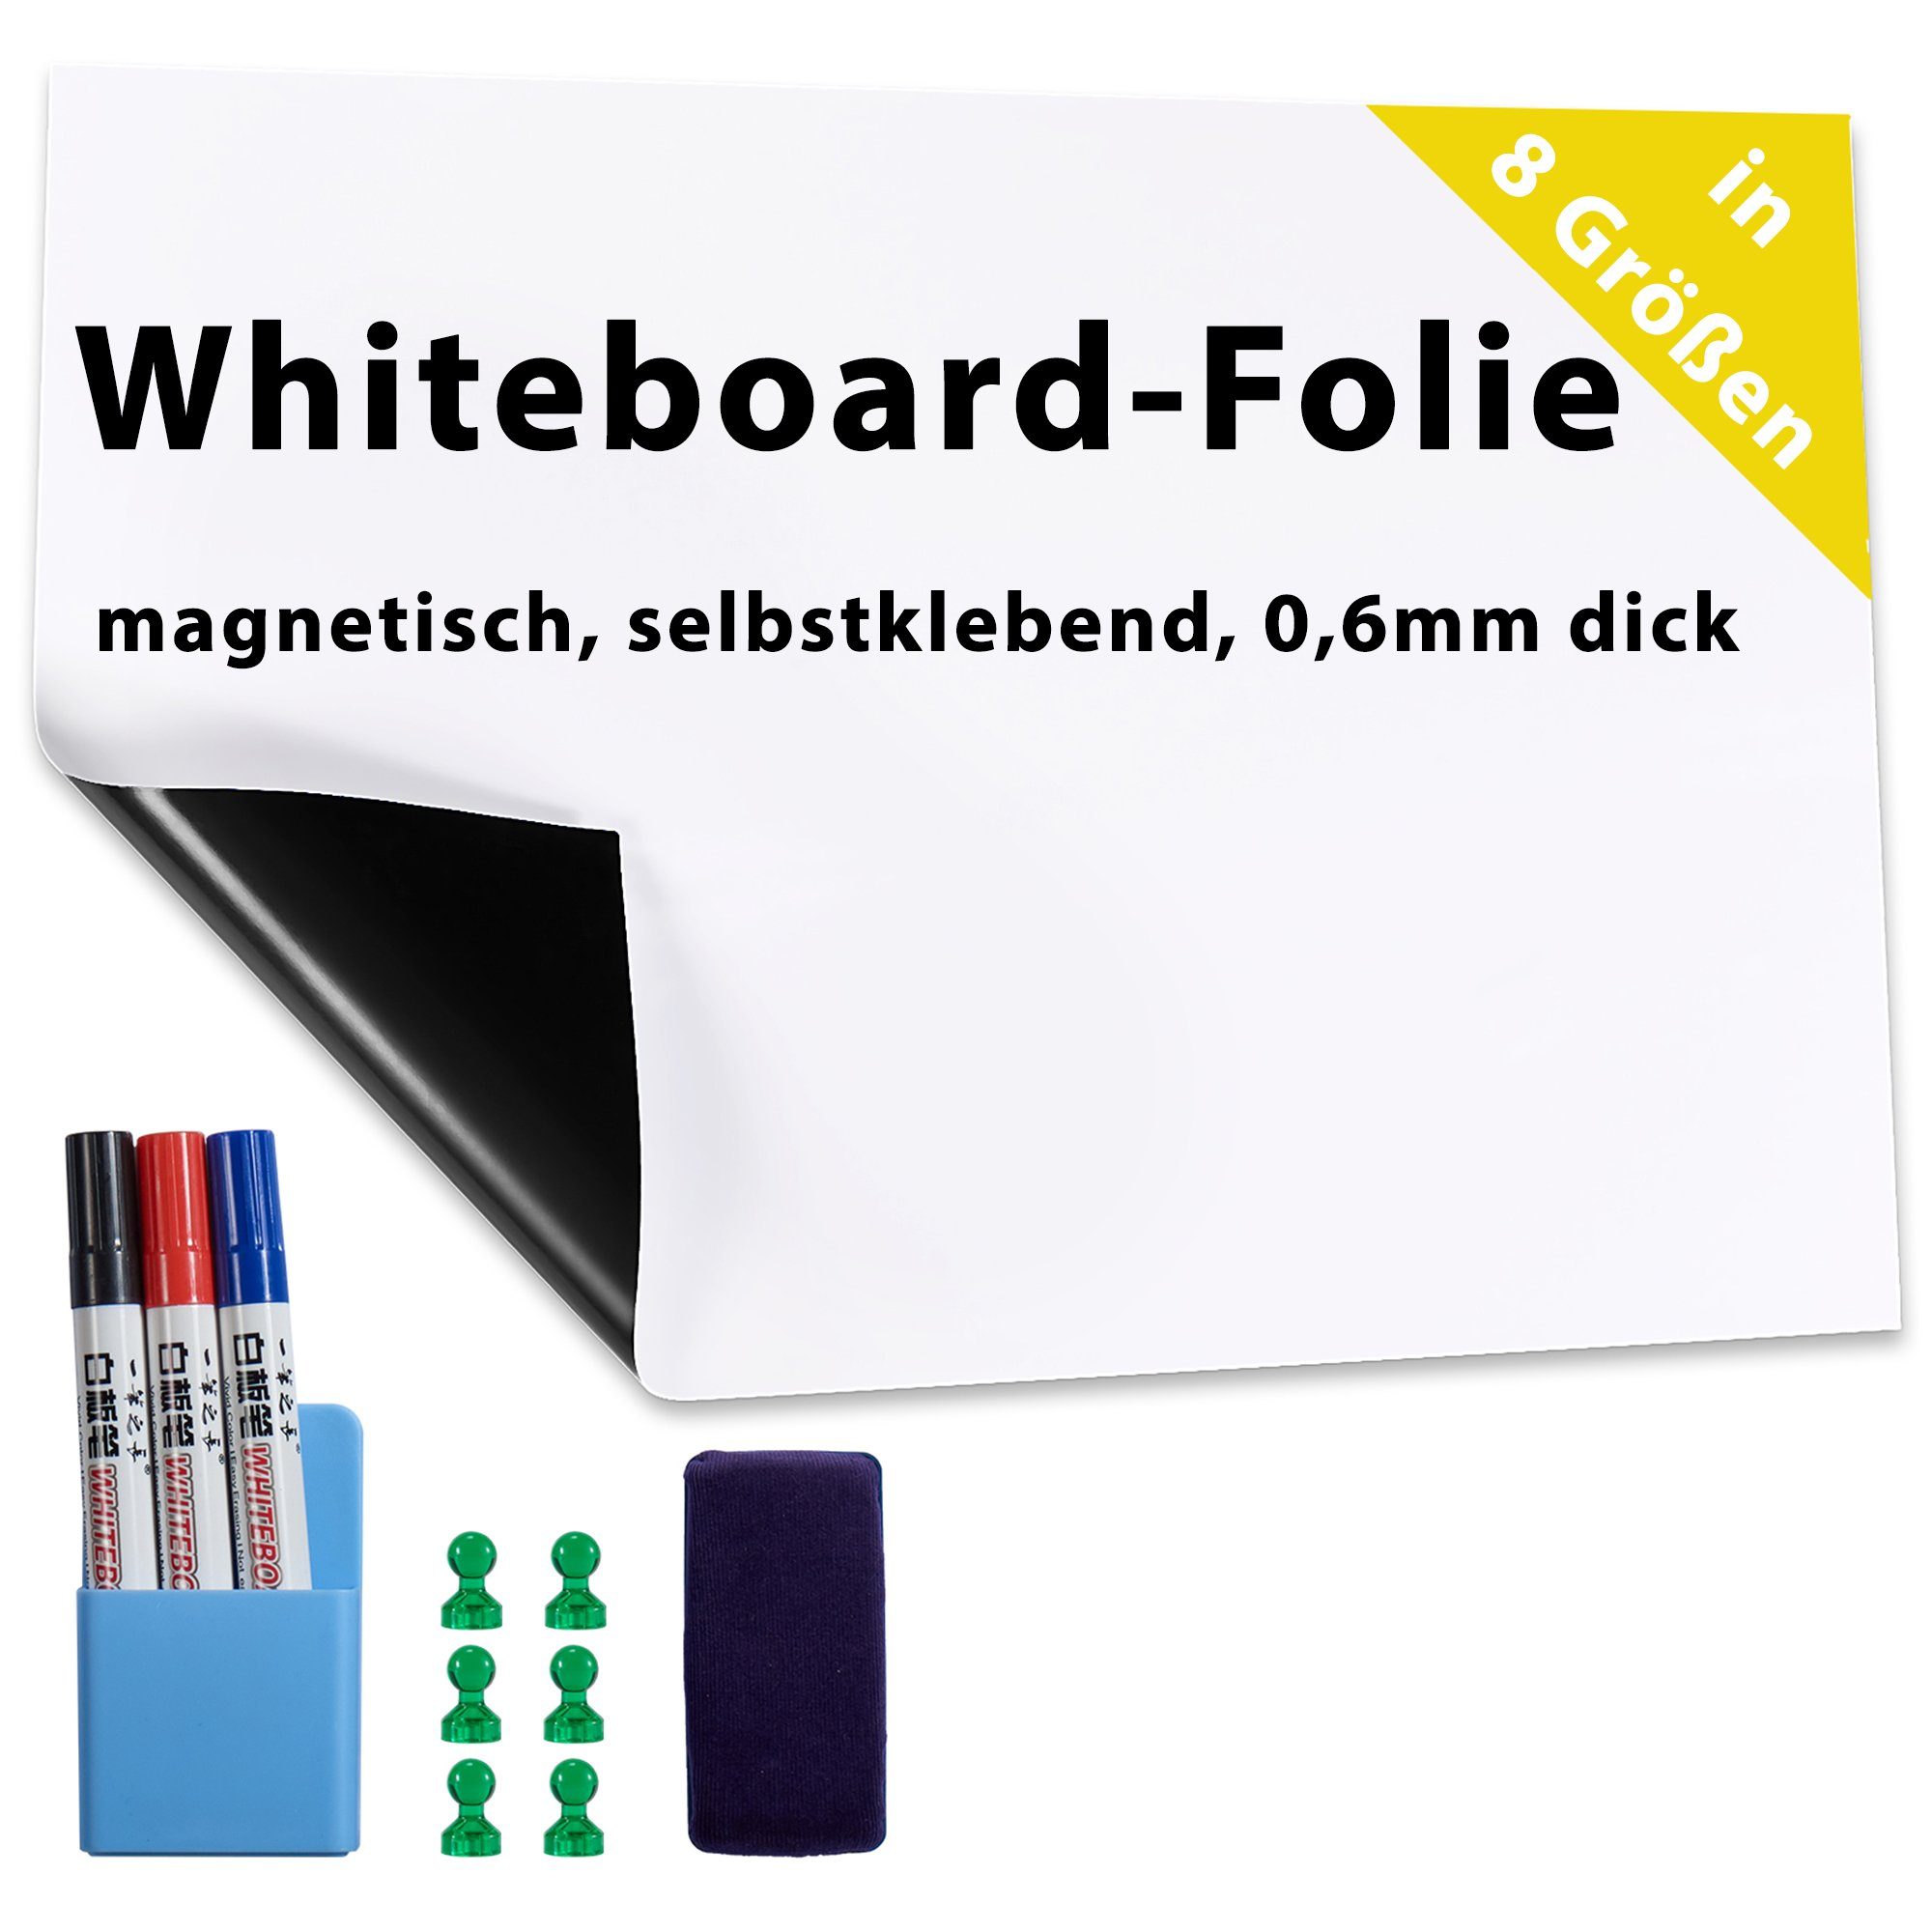 Wandtafel, Whiteboard-folie, Dynamic-Wave schwarz weiss magnetisch grün selbstklebend